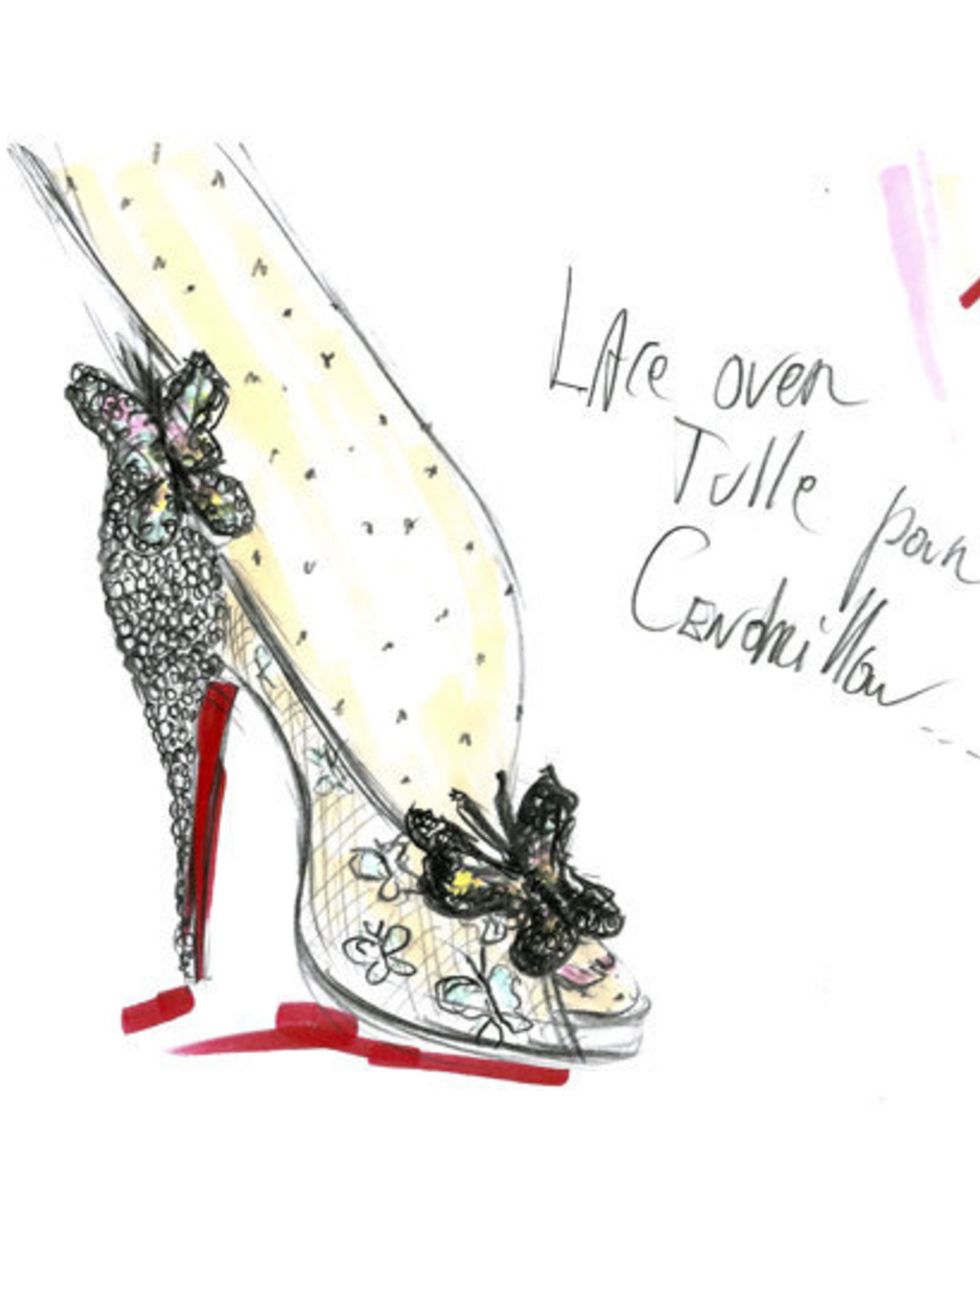 Louboutin takes on Cinderella